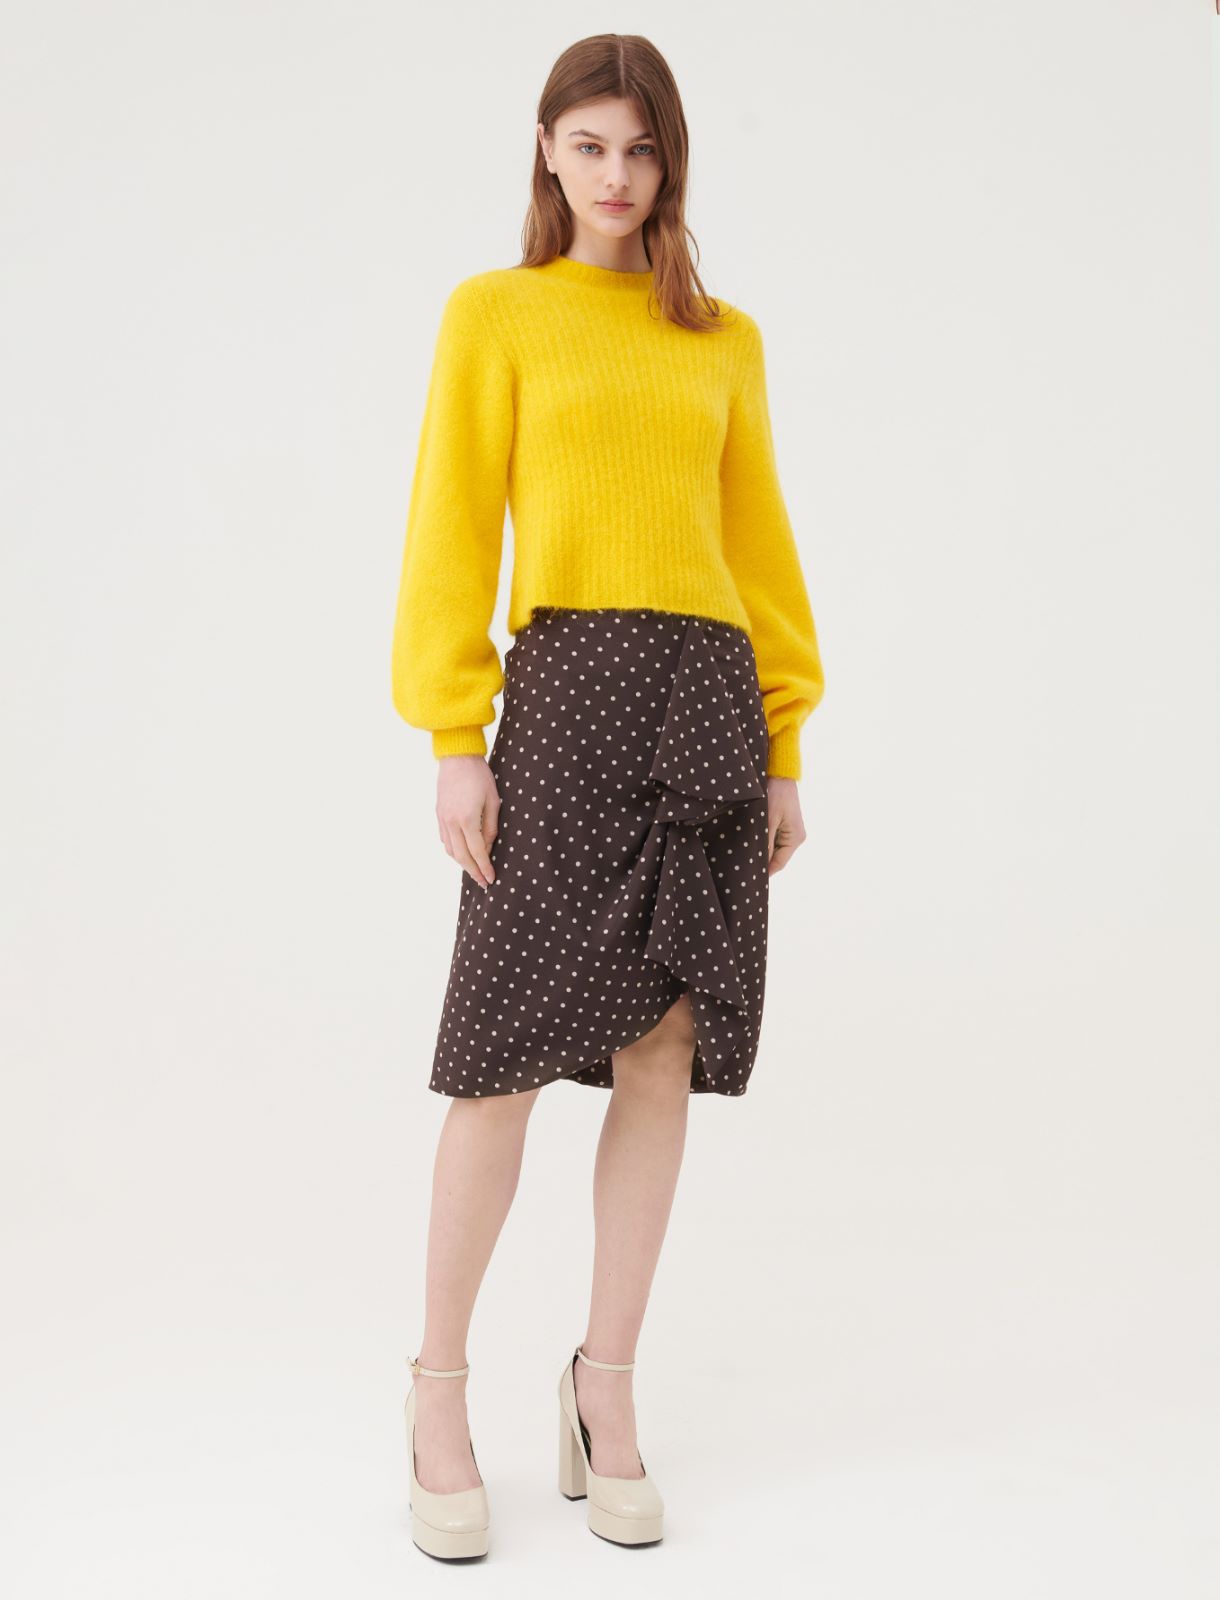 Pullover mit hohem Kragen, gelb | Marella